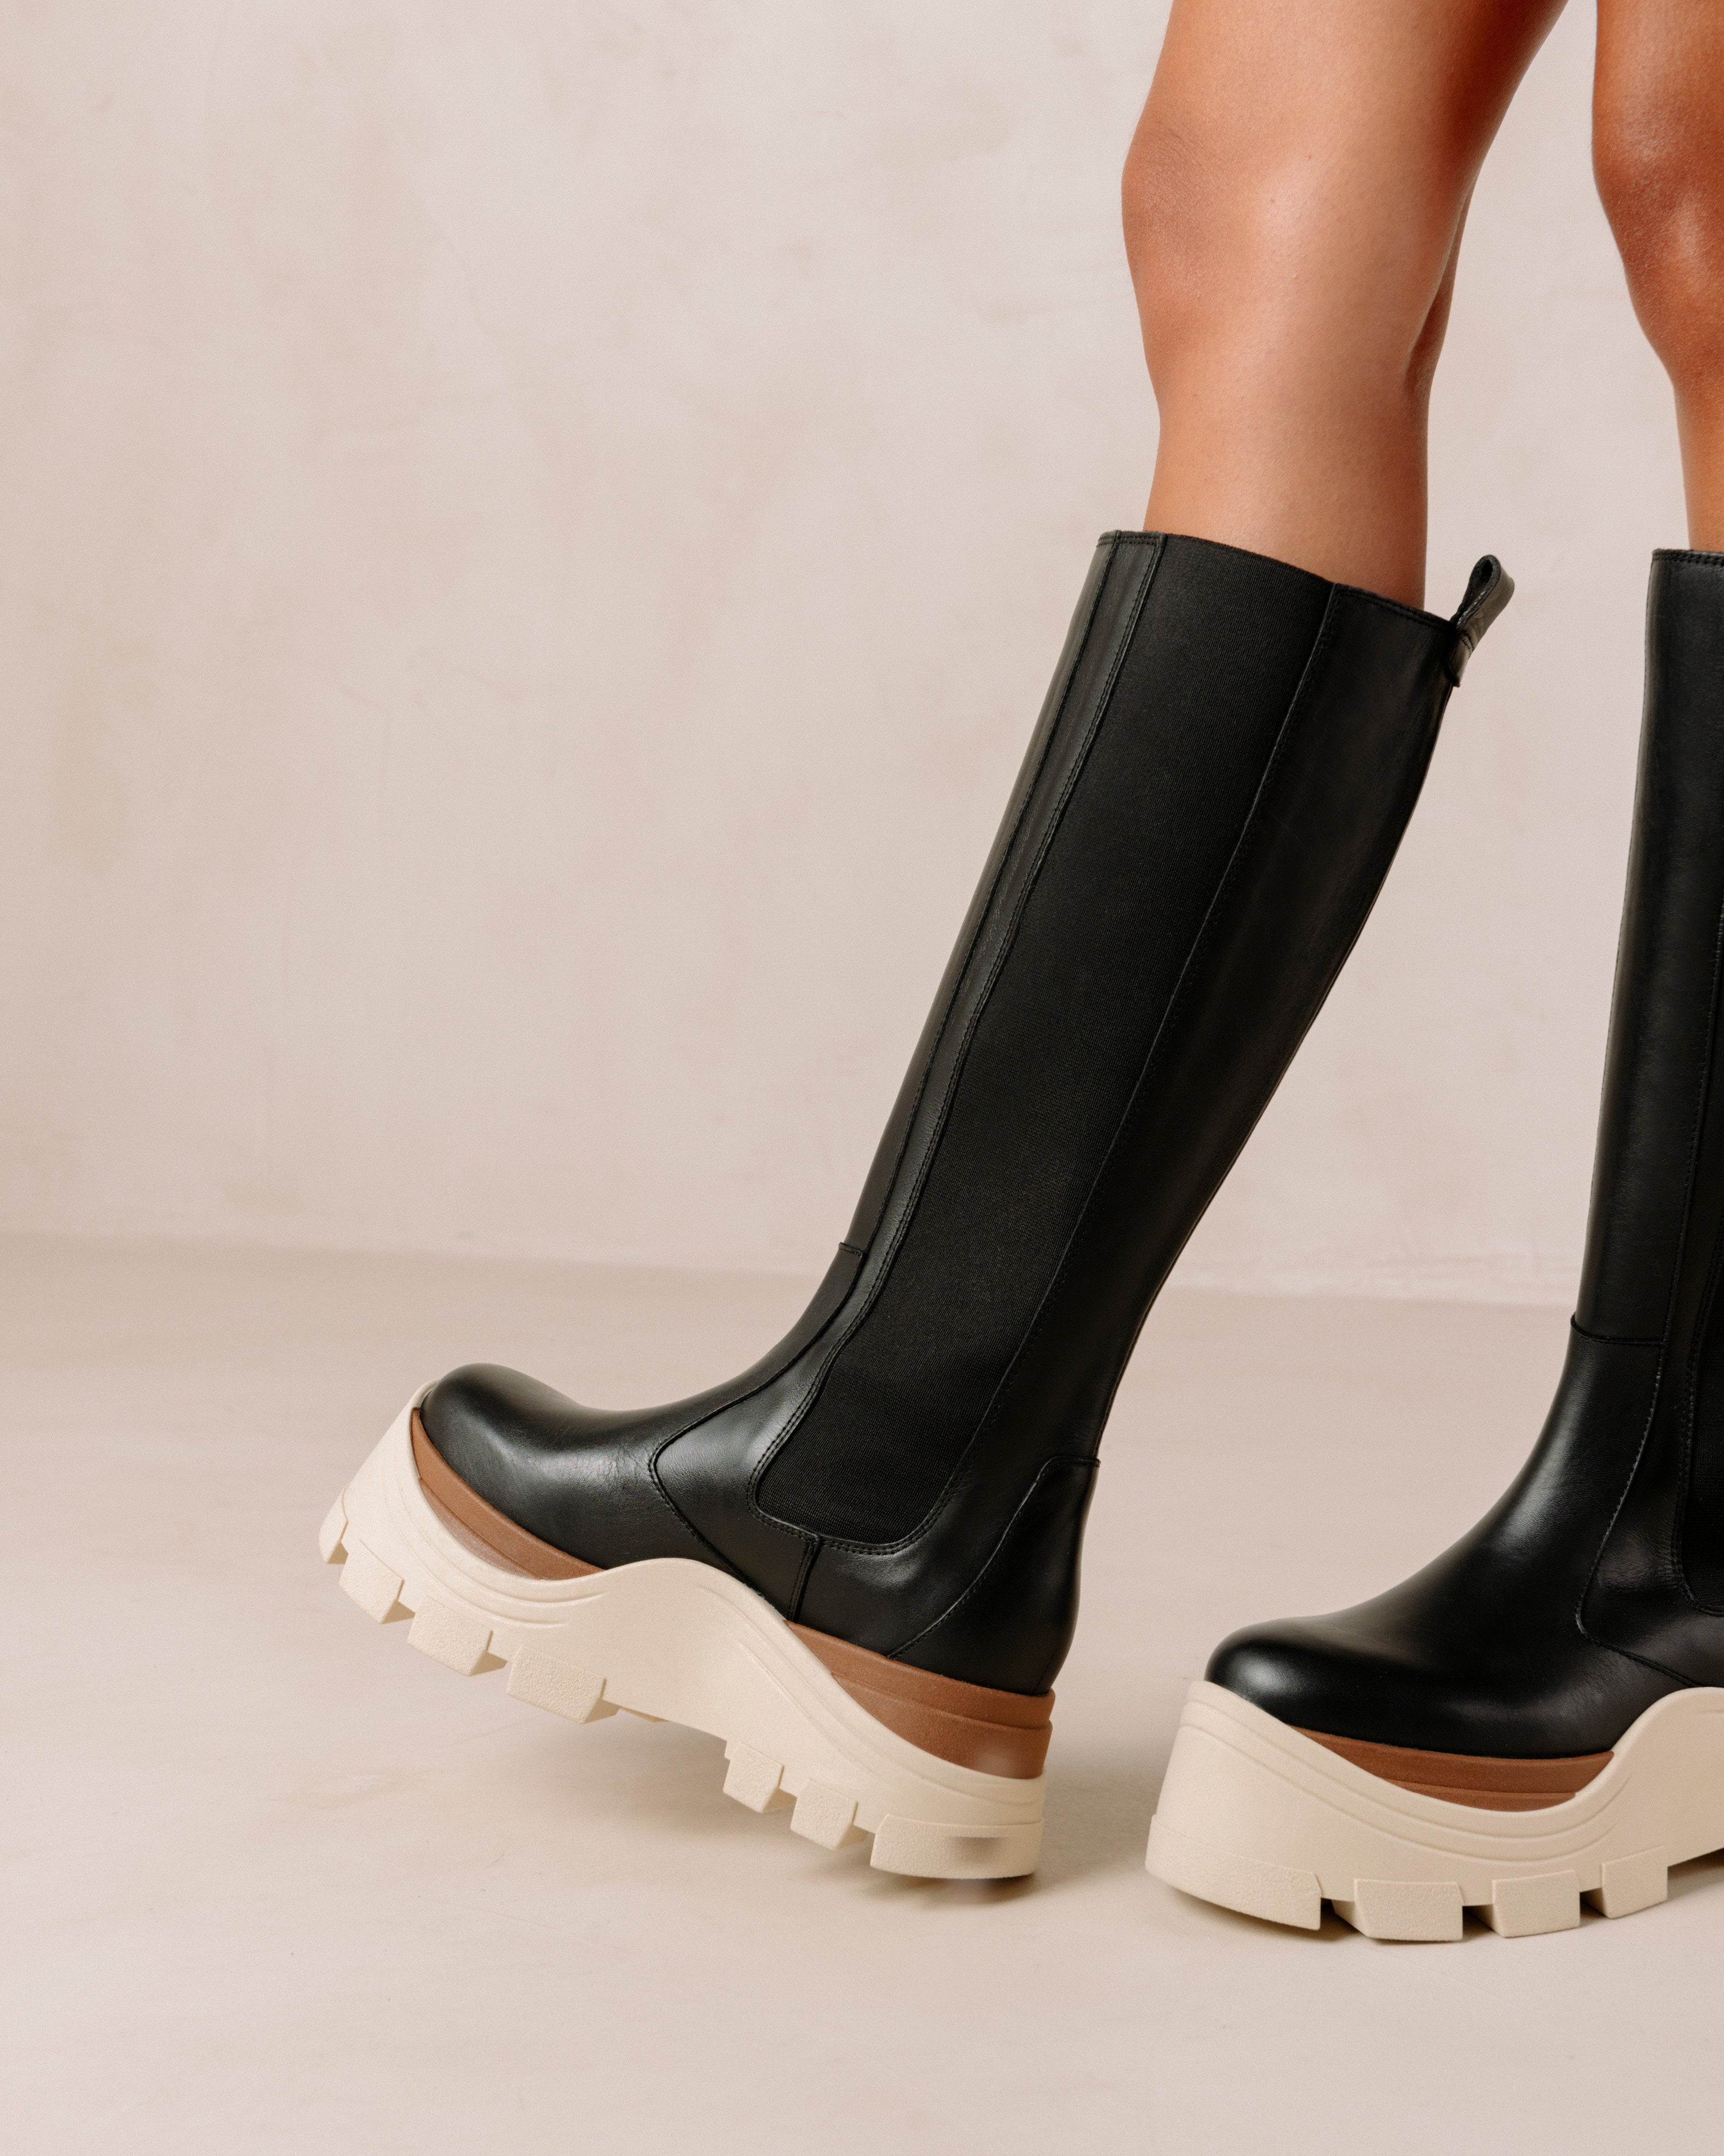 roxie-marcona-black-boots-alohas-686558.jpg